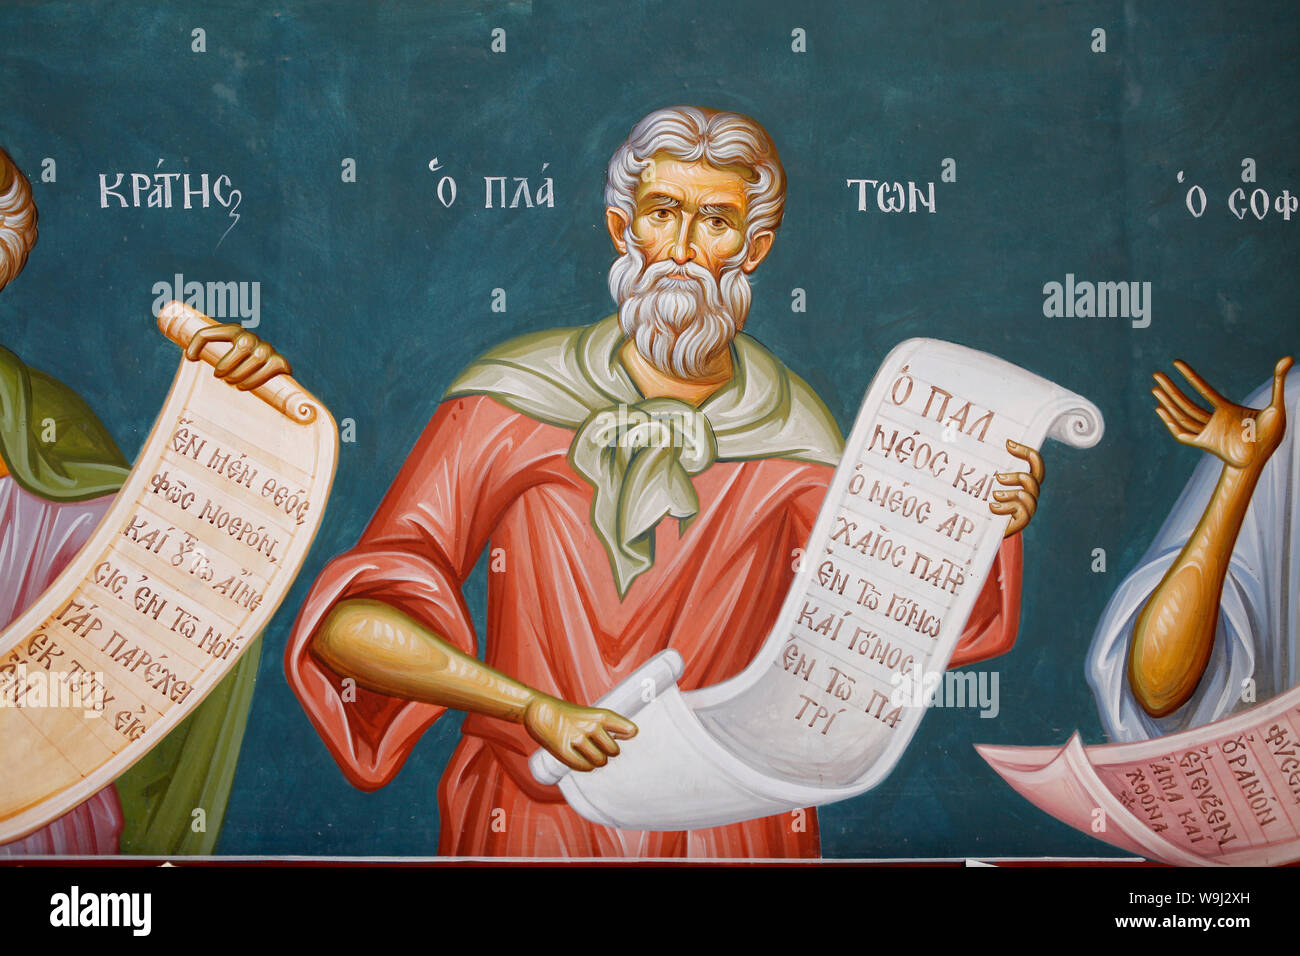 Plato, freien am orthodoxen Tempel in Griechenland Stockfoto